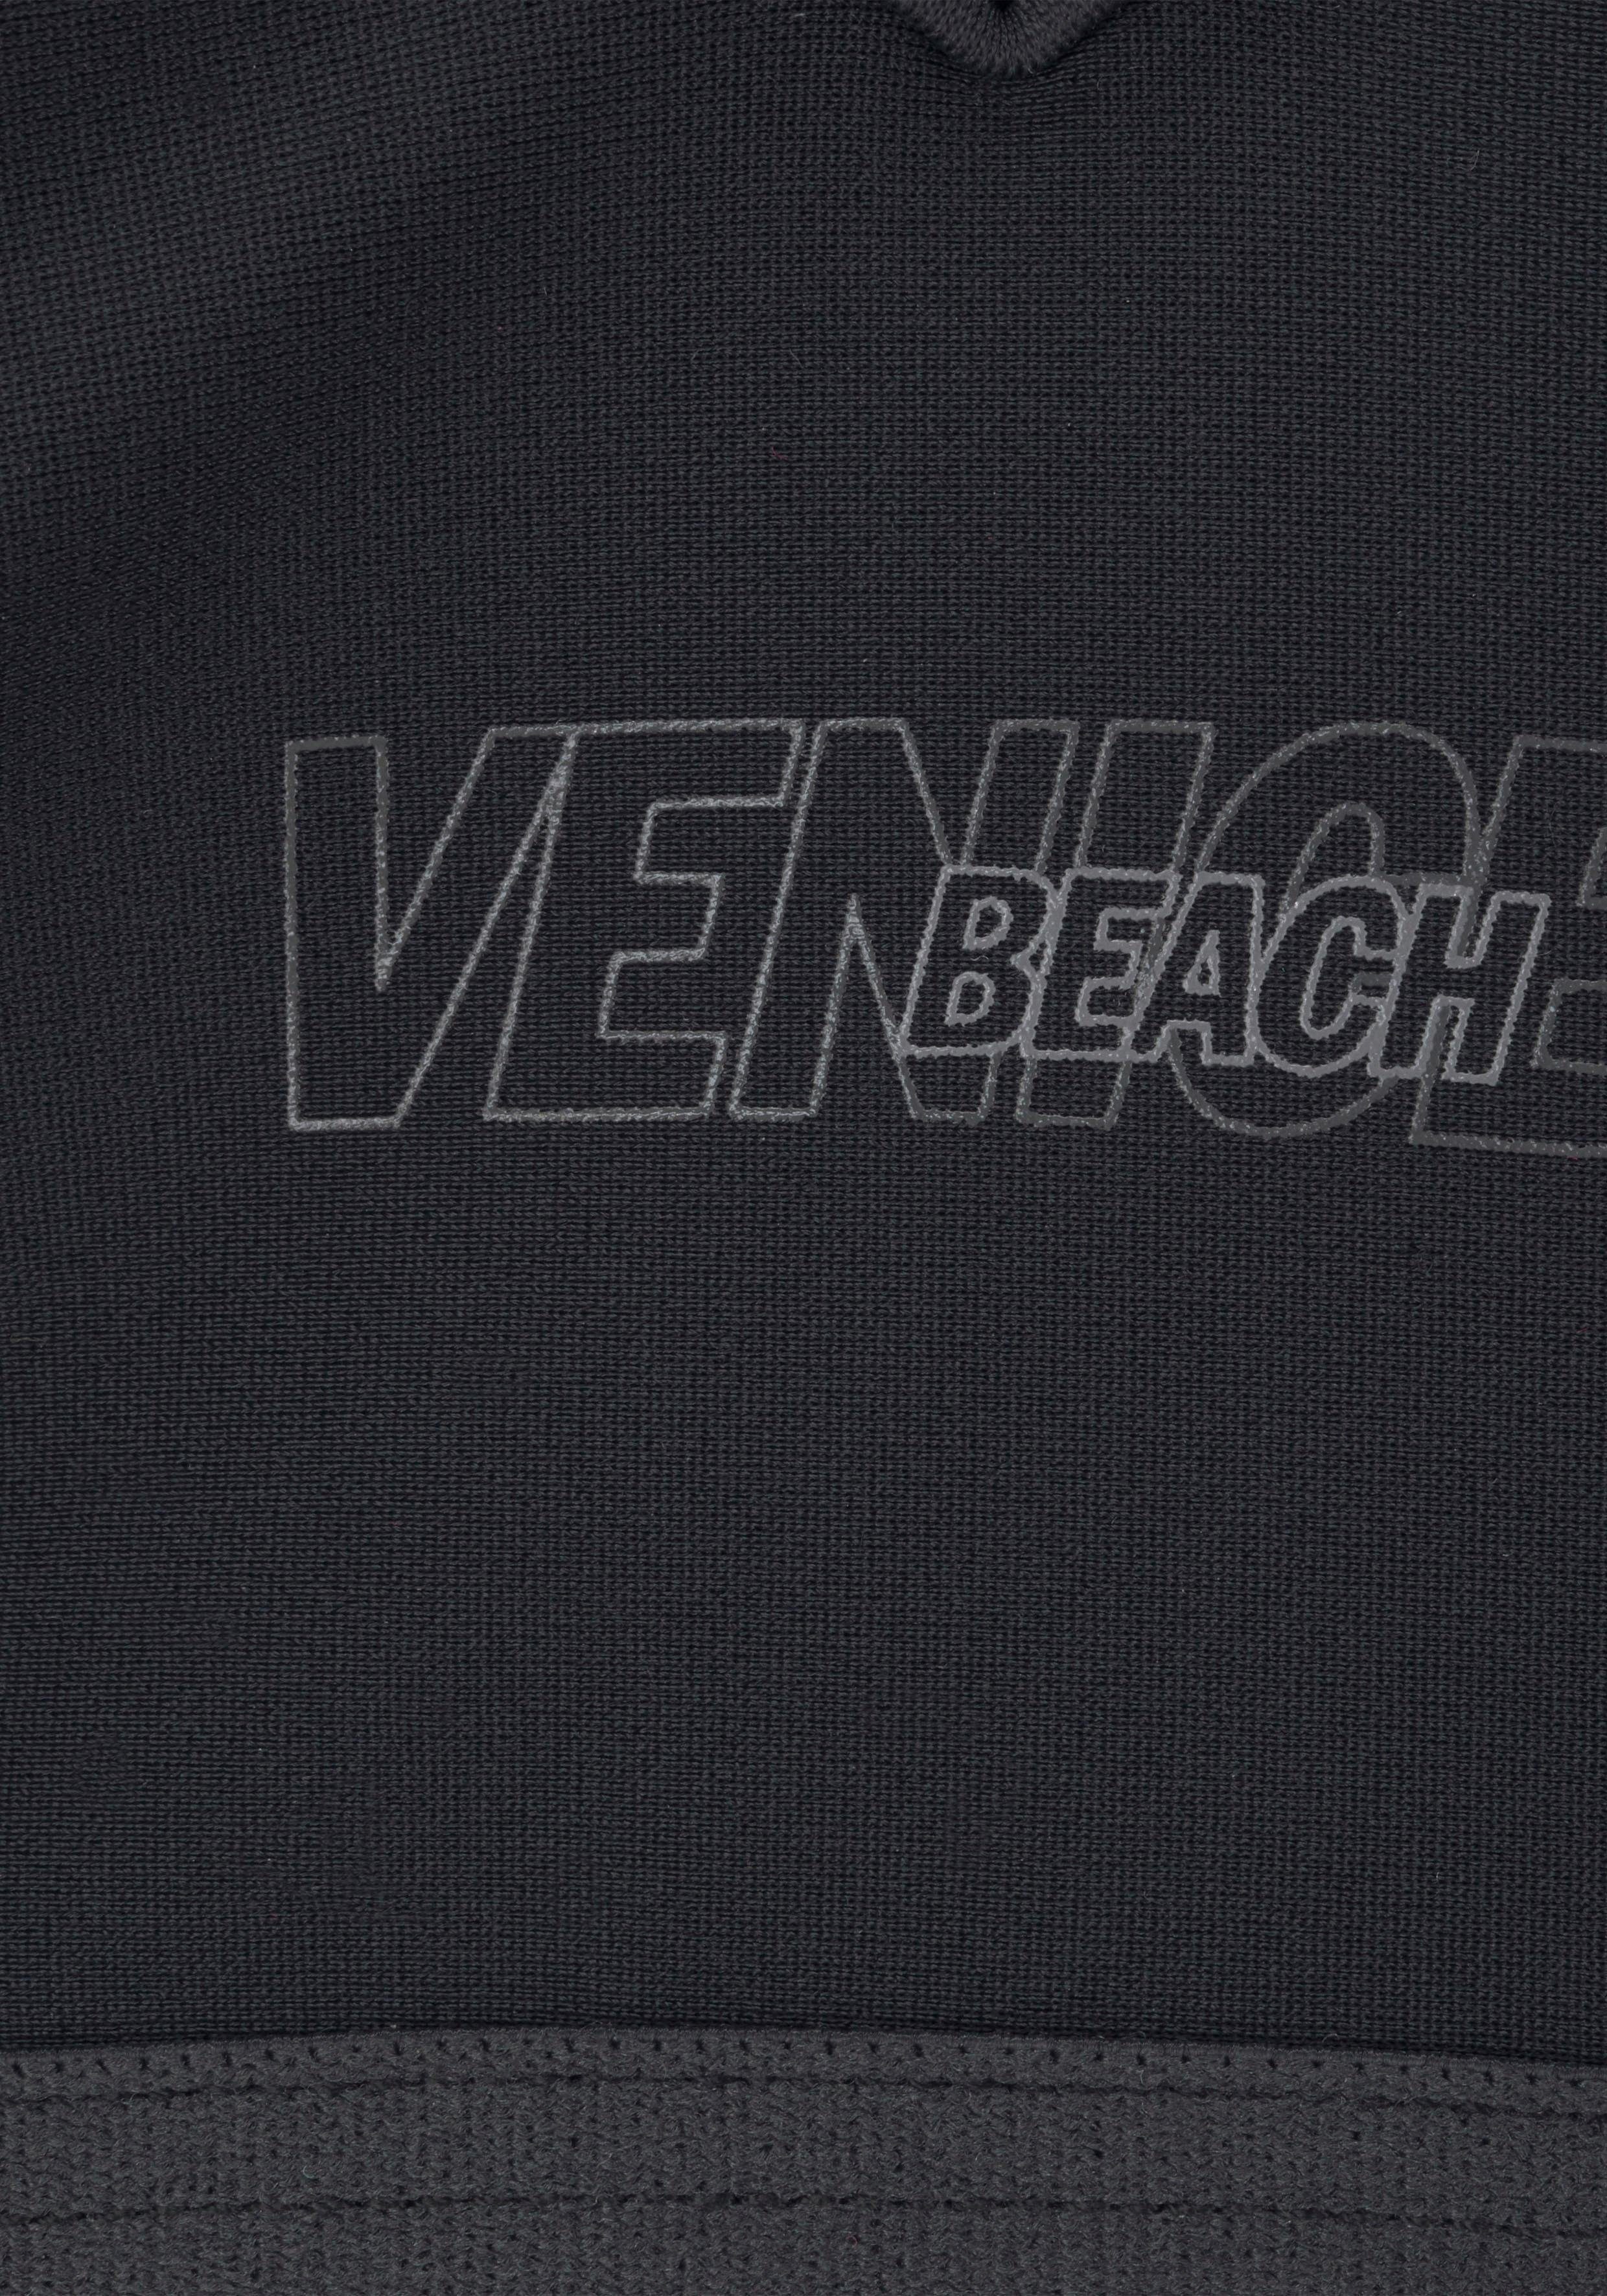 Venice Beach Bustier-Bikini mit abgetönten Details schwarz-grau